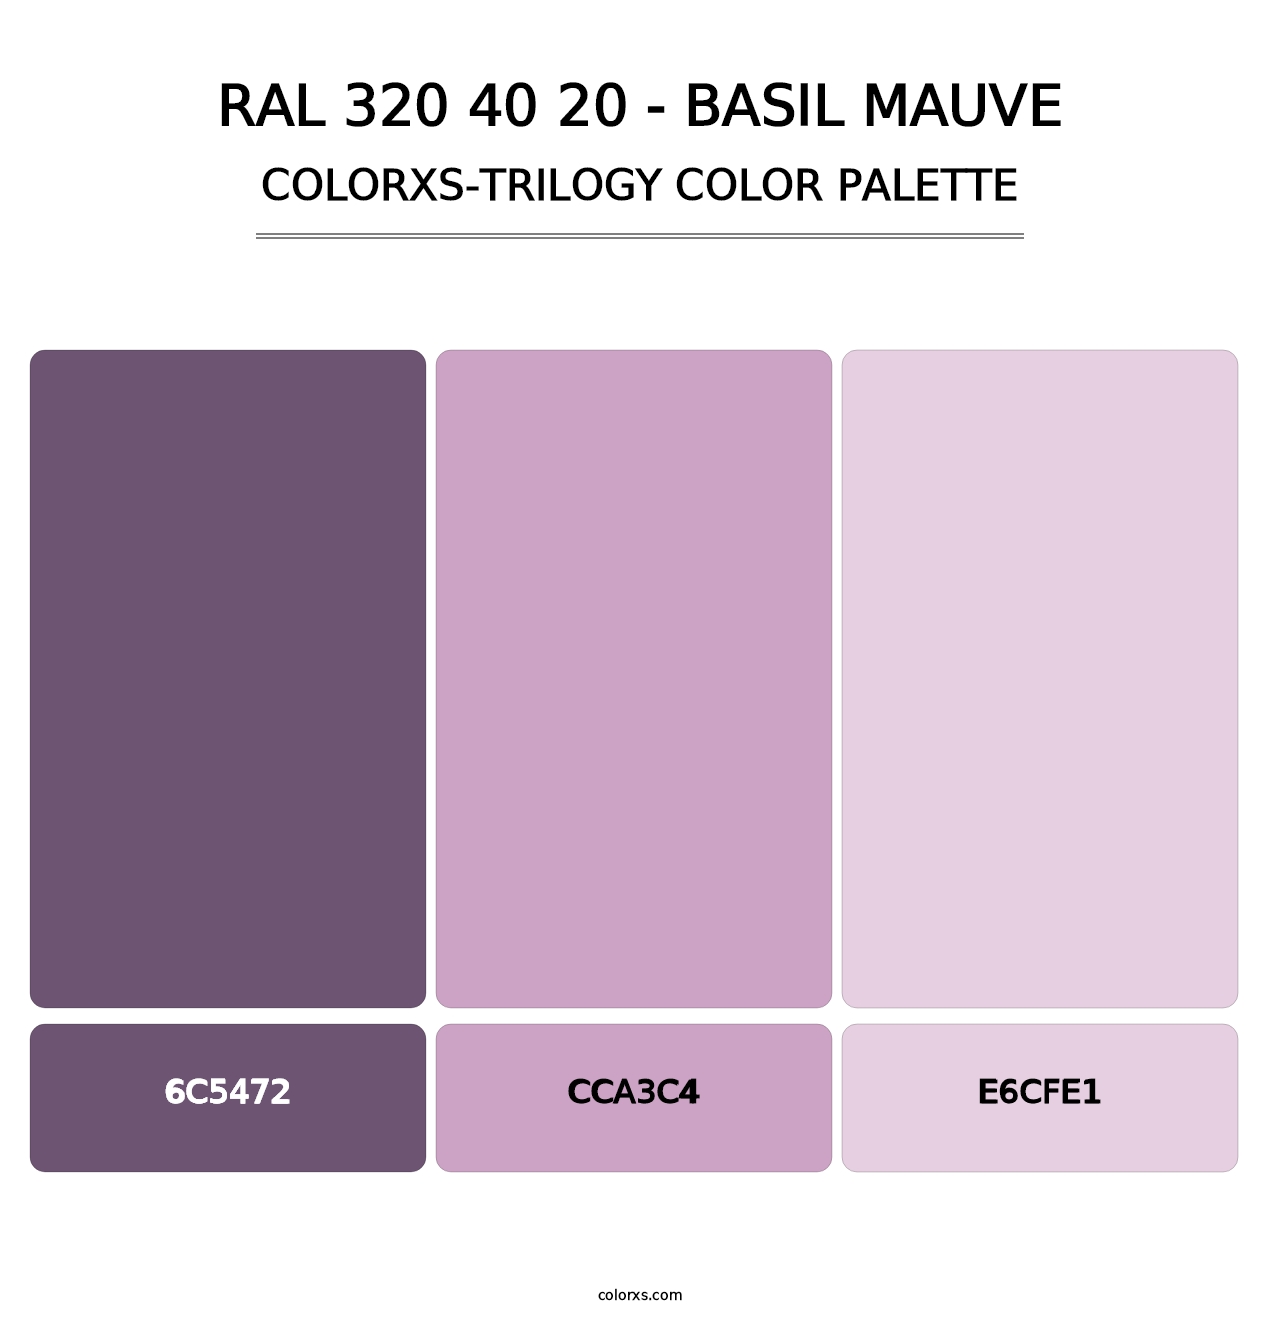 RAL 320 40 20 - Basil Mauve - Colorxs Trilogy Palette